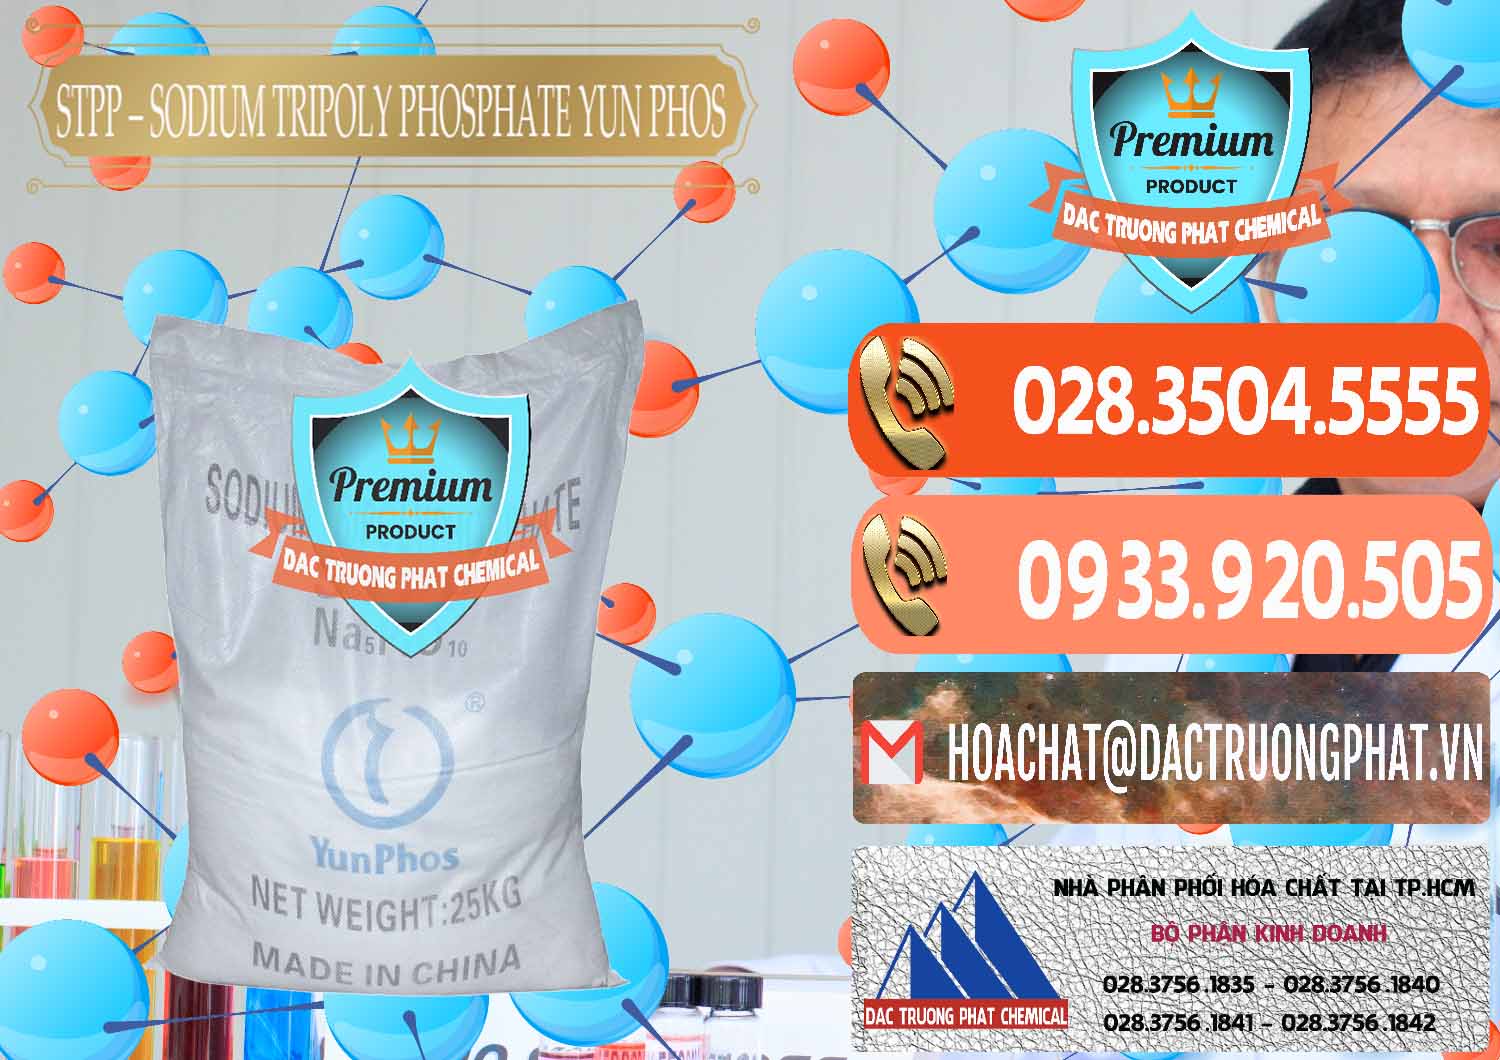 Công ty chuyên bán & cung cấp Sodium Tripoly Phosphate - STPP Yun Phos Trung Quốc China - 0153 - Cty chuyên nhập khẩu & phân phối hóa chất tại TP.HCM - hoachatmientay.com